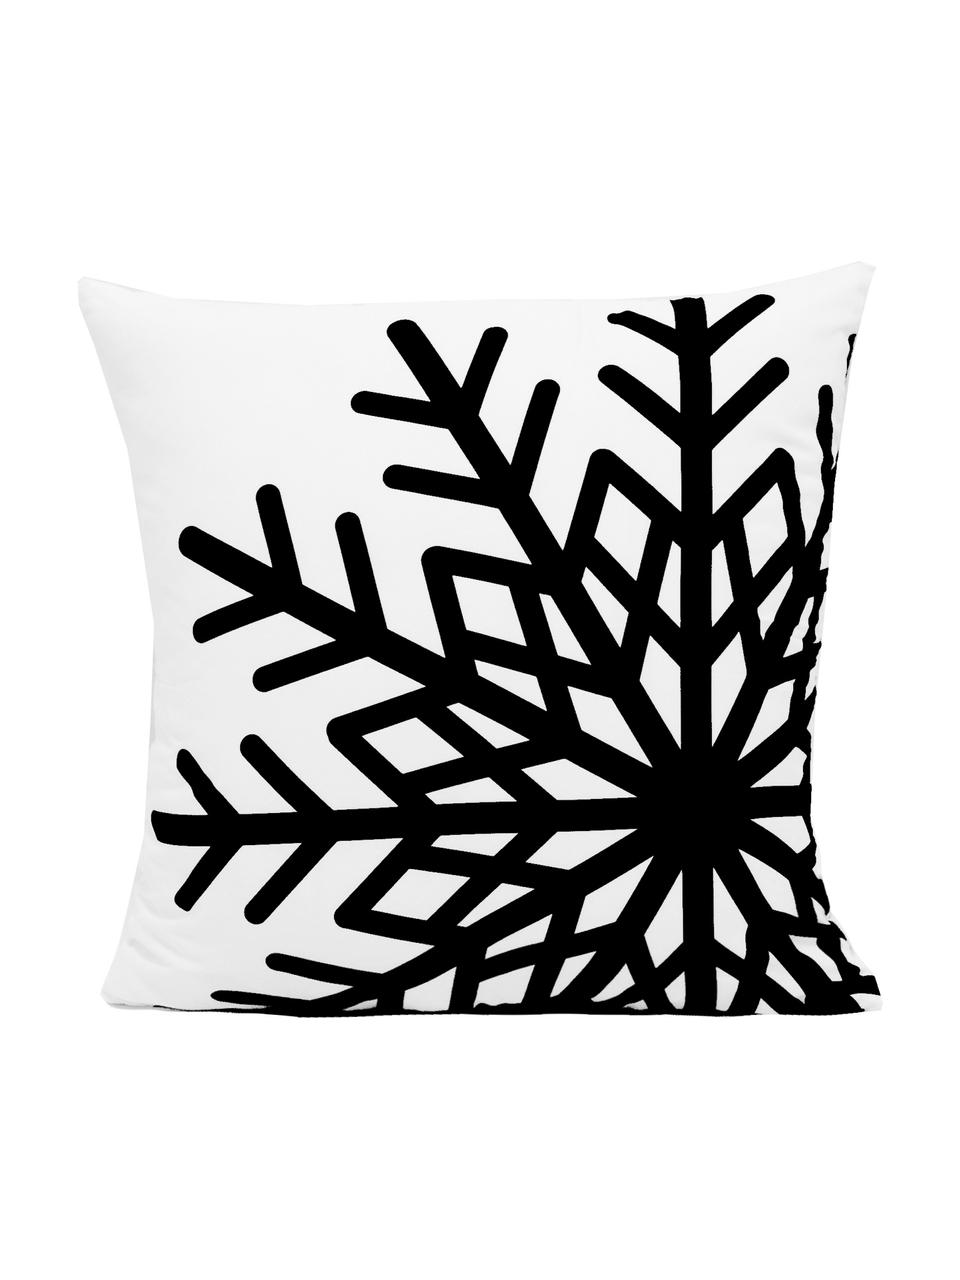 Kussenhoes Snowflake met sneeuwvlokken motief, Polyester, Zwart, wit, 45 x 45 cm